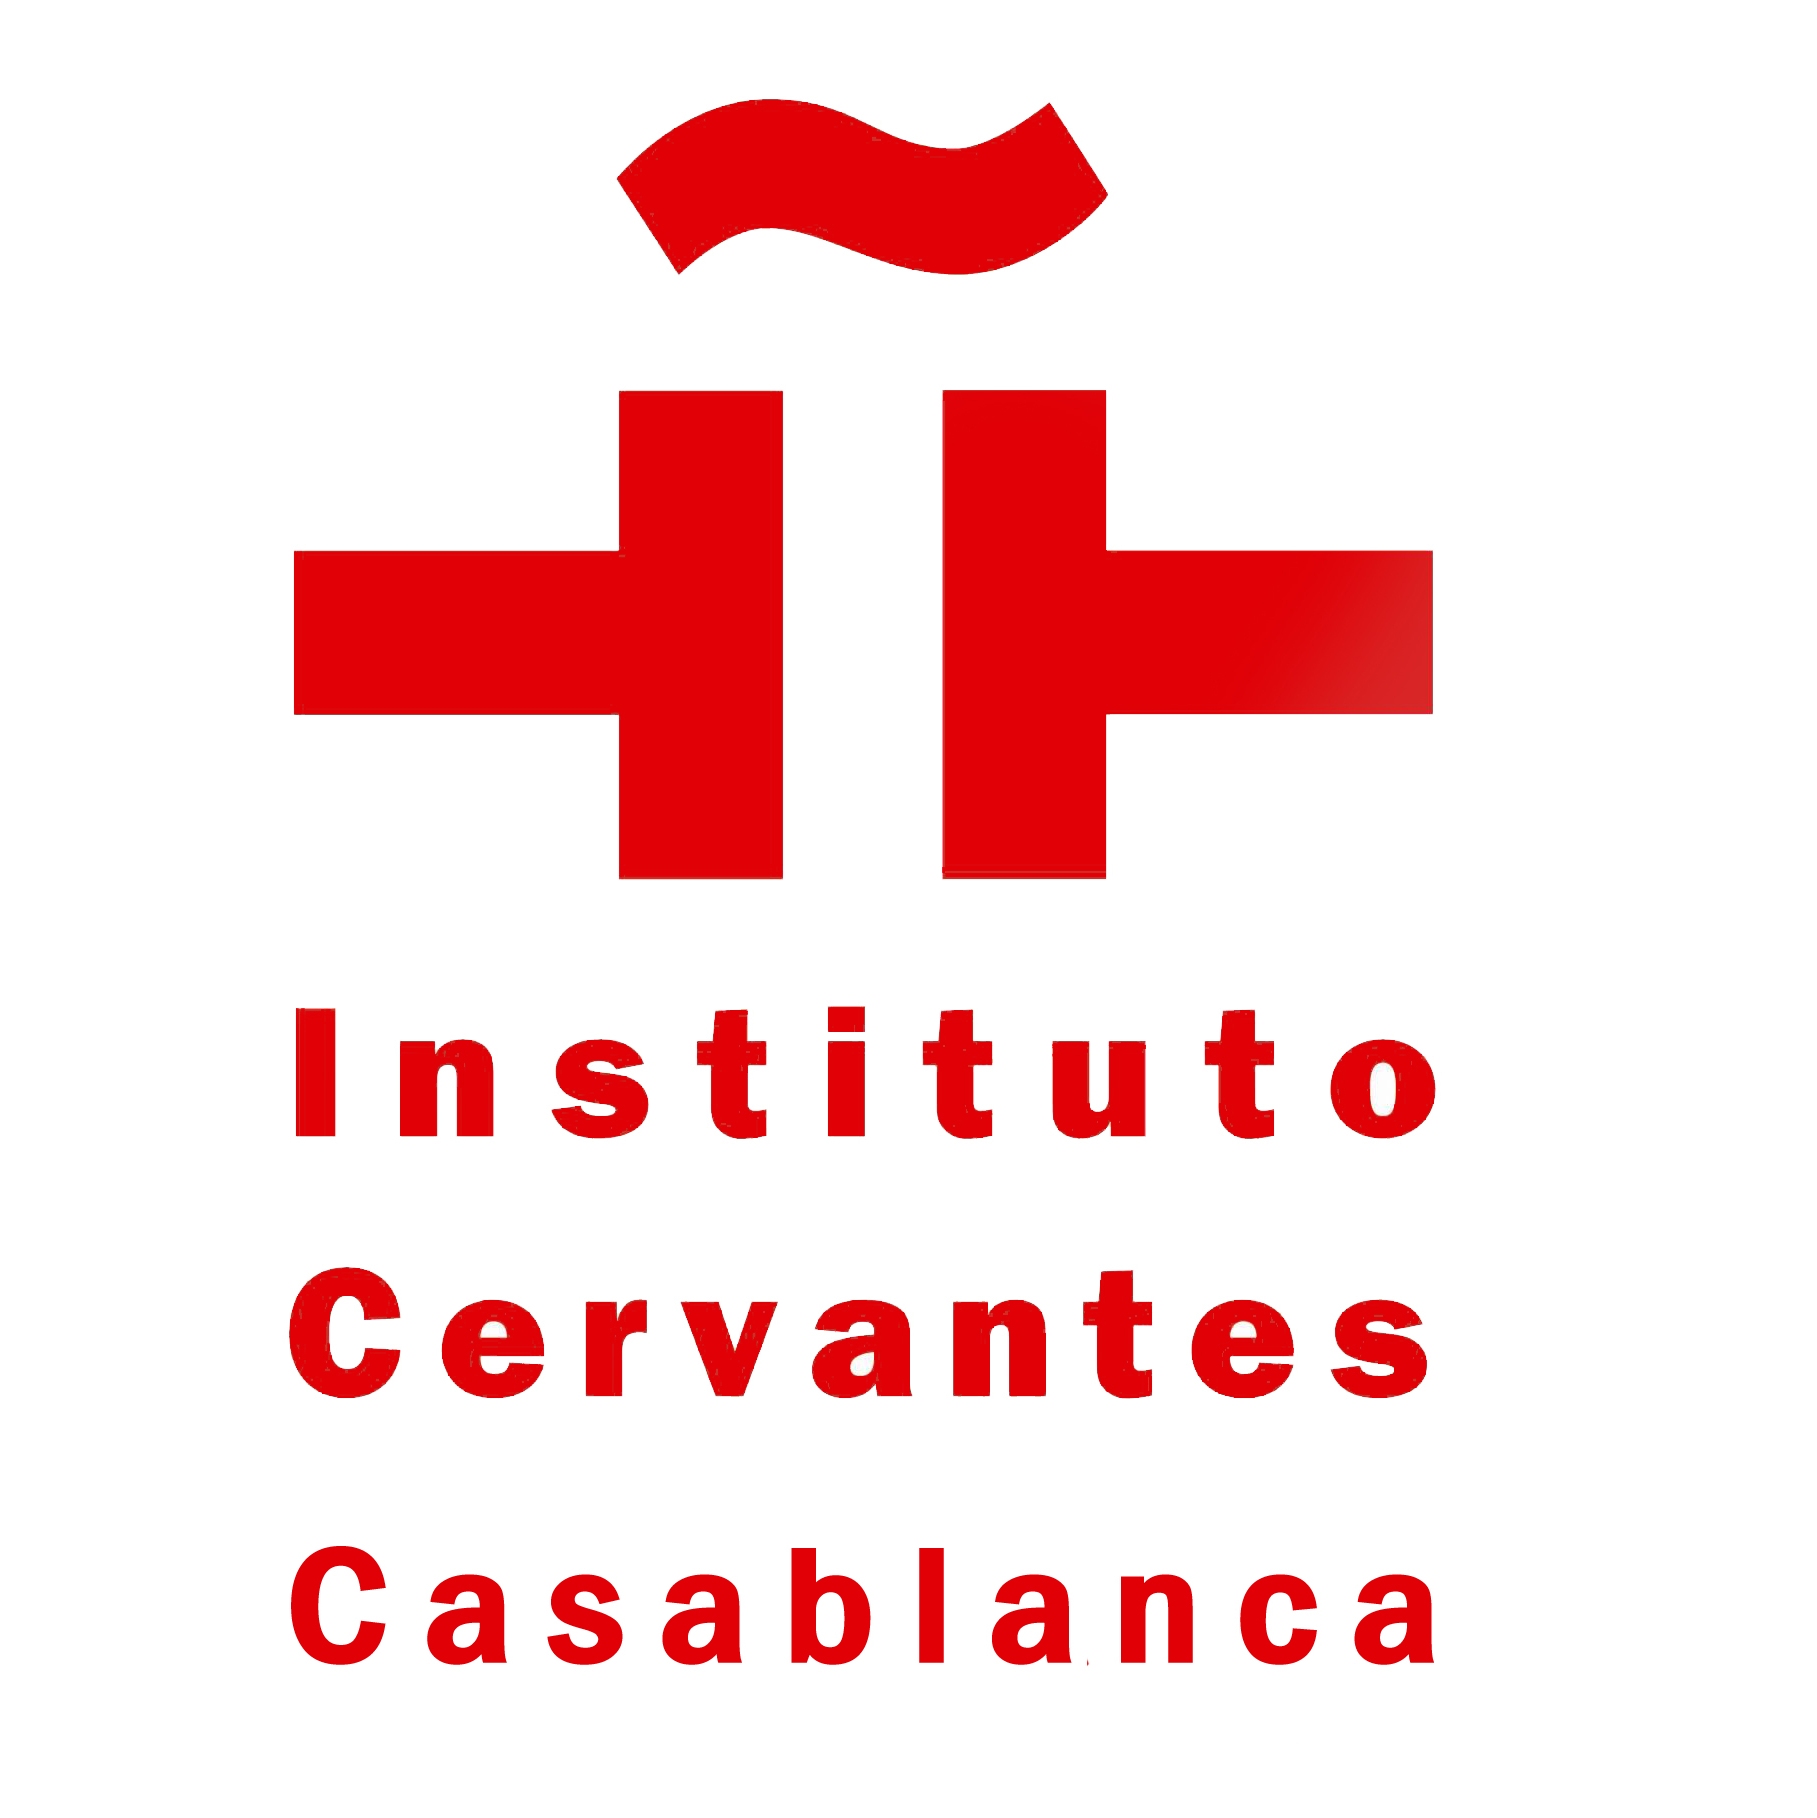 Instituto Cervantes (Casablanca)